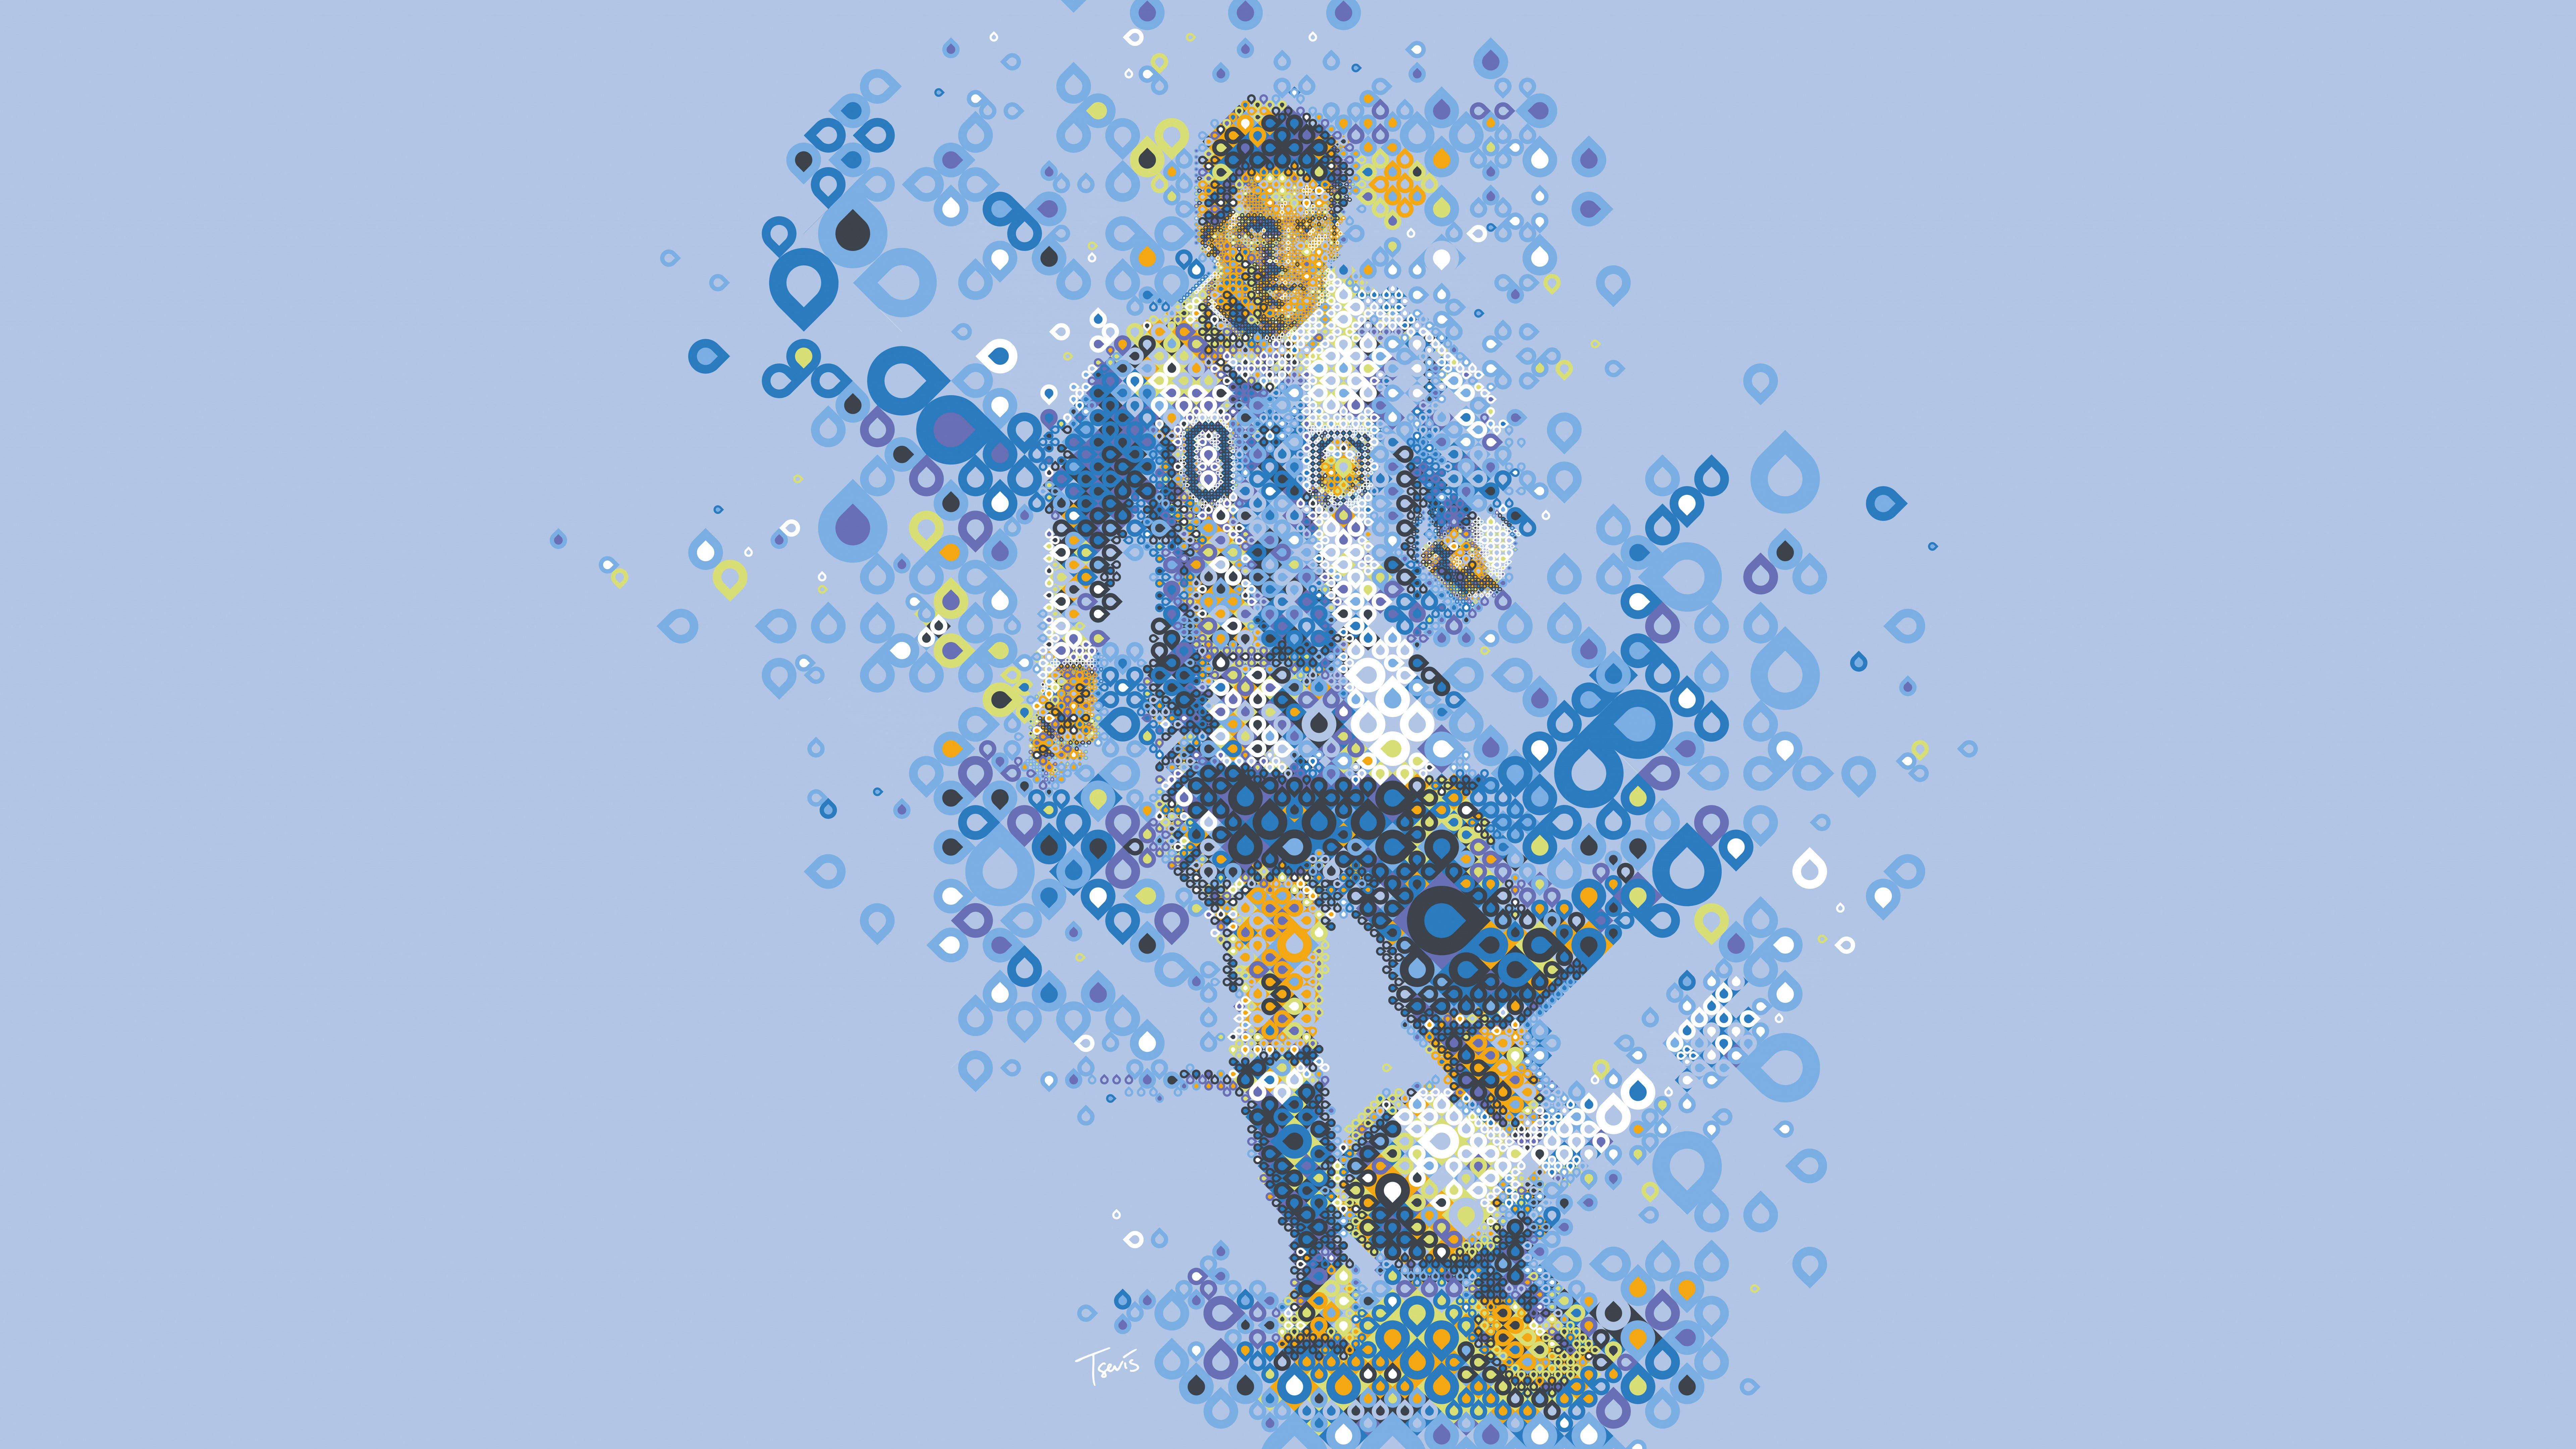 Hình nền Messi 8k sẽ tái hiện vẻ đẹp tuyệt vời của ngôi sao này, giúp bạn càng yêu thích và ngưỡng mộ anh ta hơn. Hãy chiêm ngưỡng hình ảnh và lưu lại làm hình nền để luôn theo dõi Messi đẹp nhất!